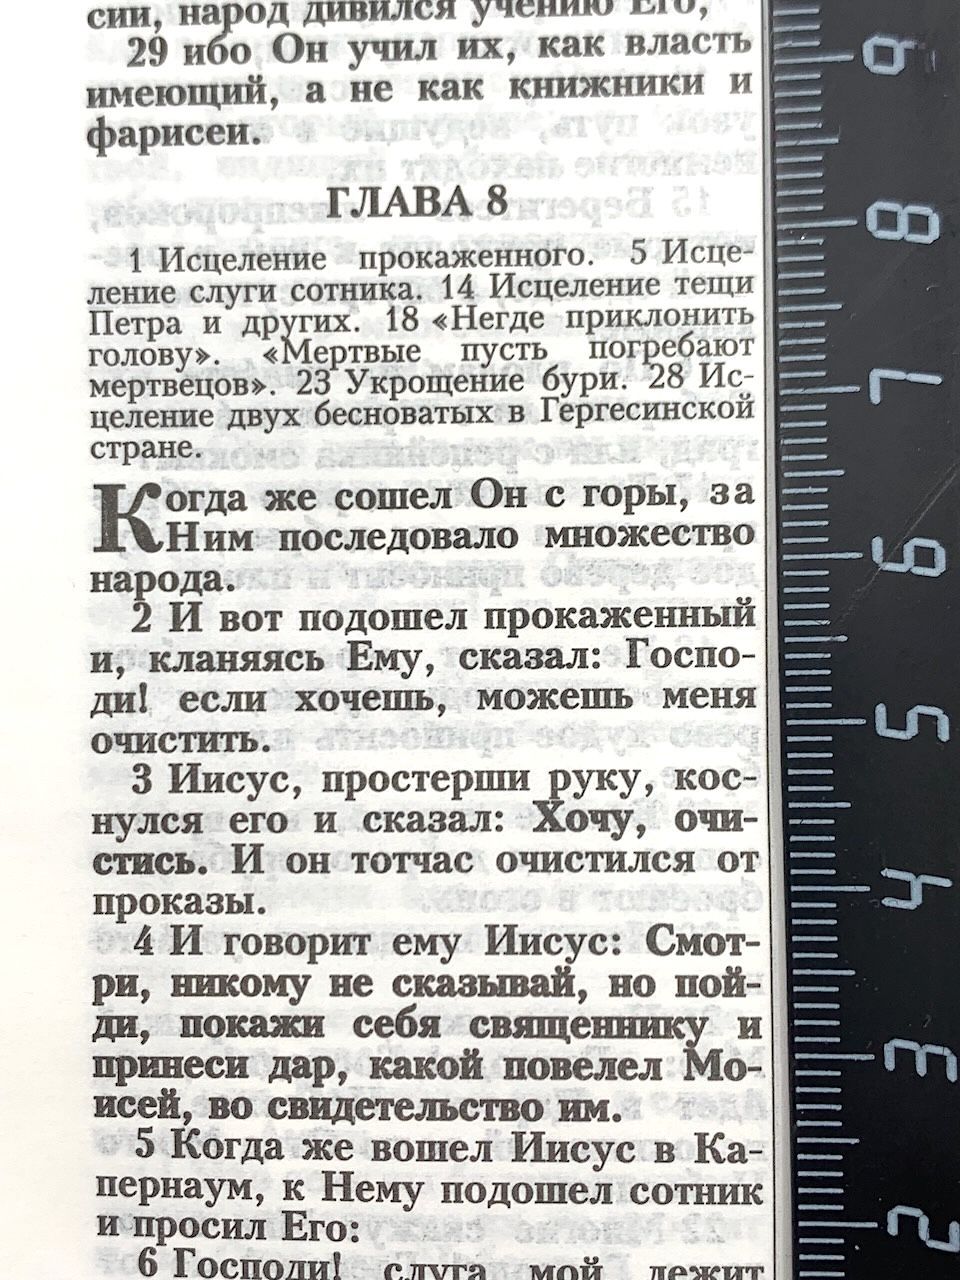 Библия 048 z код 24048-11 дизайн "Библия с вензелем", кожаный переплет на молнии, цвет черный, формат 125*195 мм